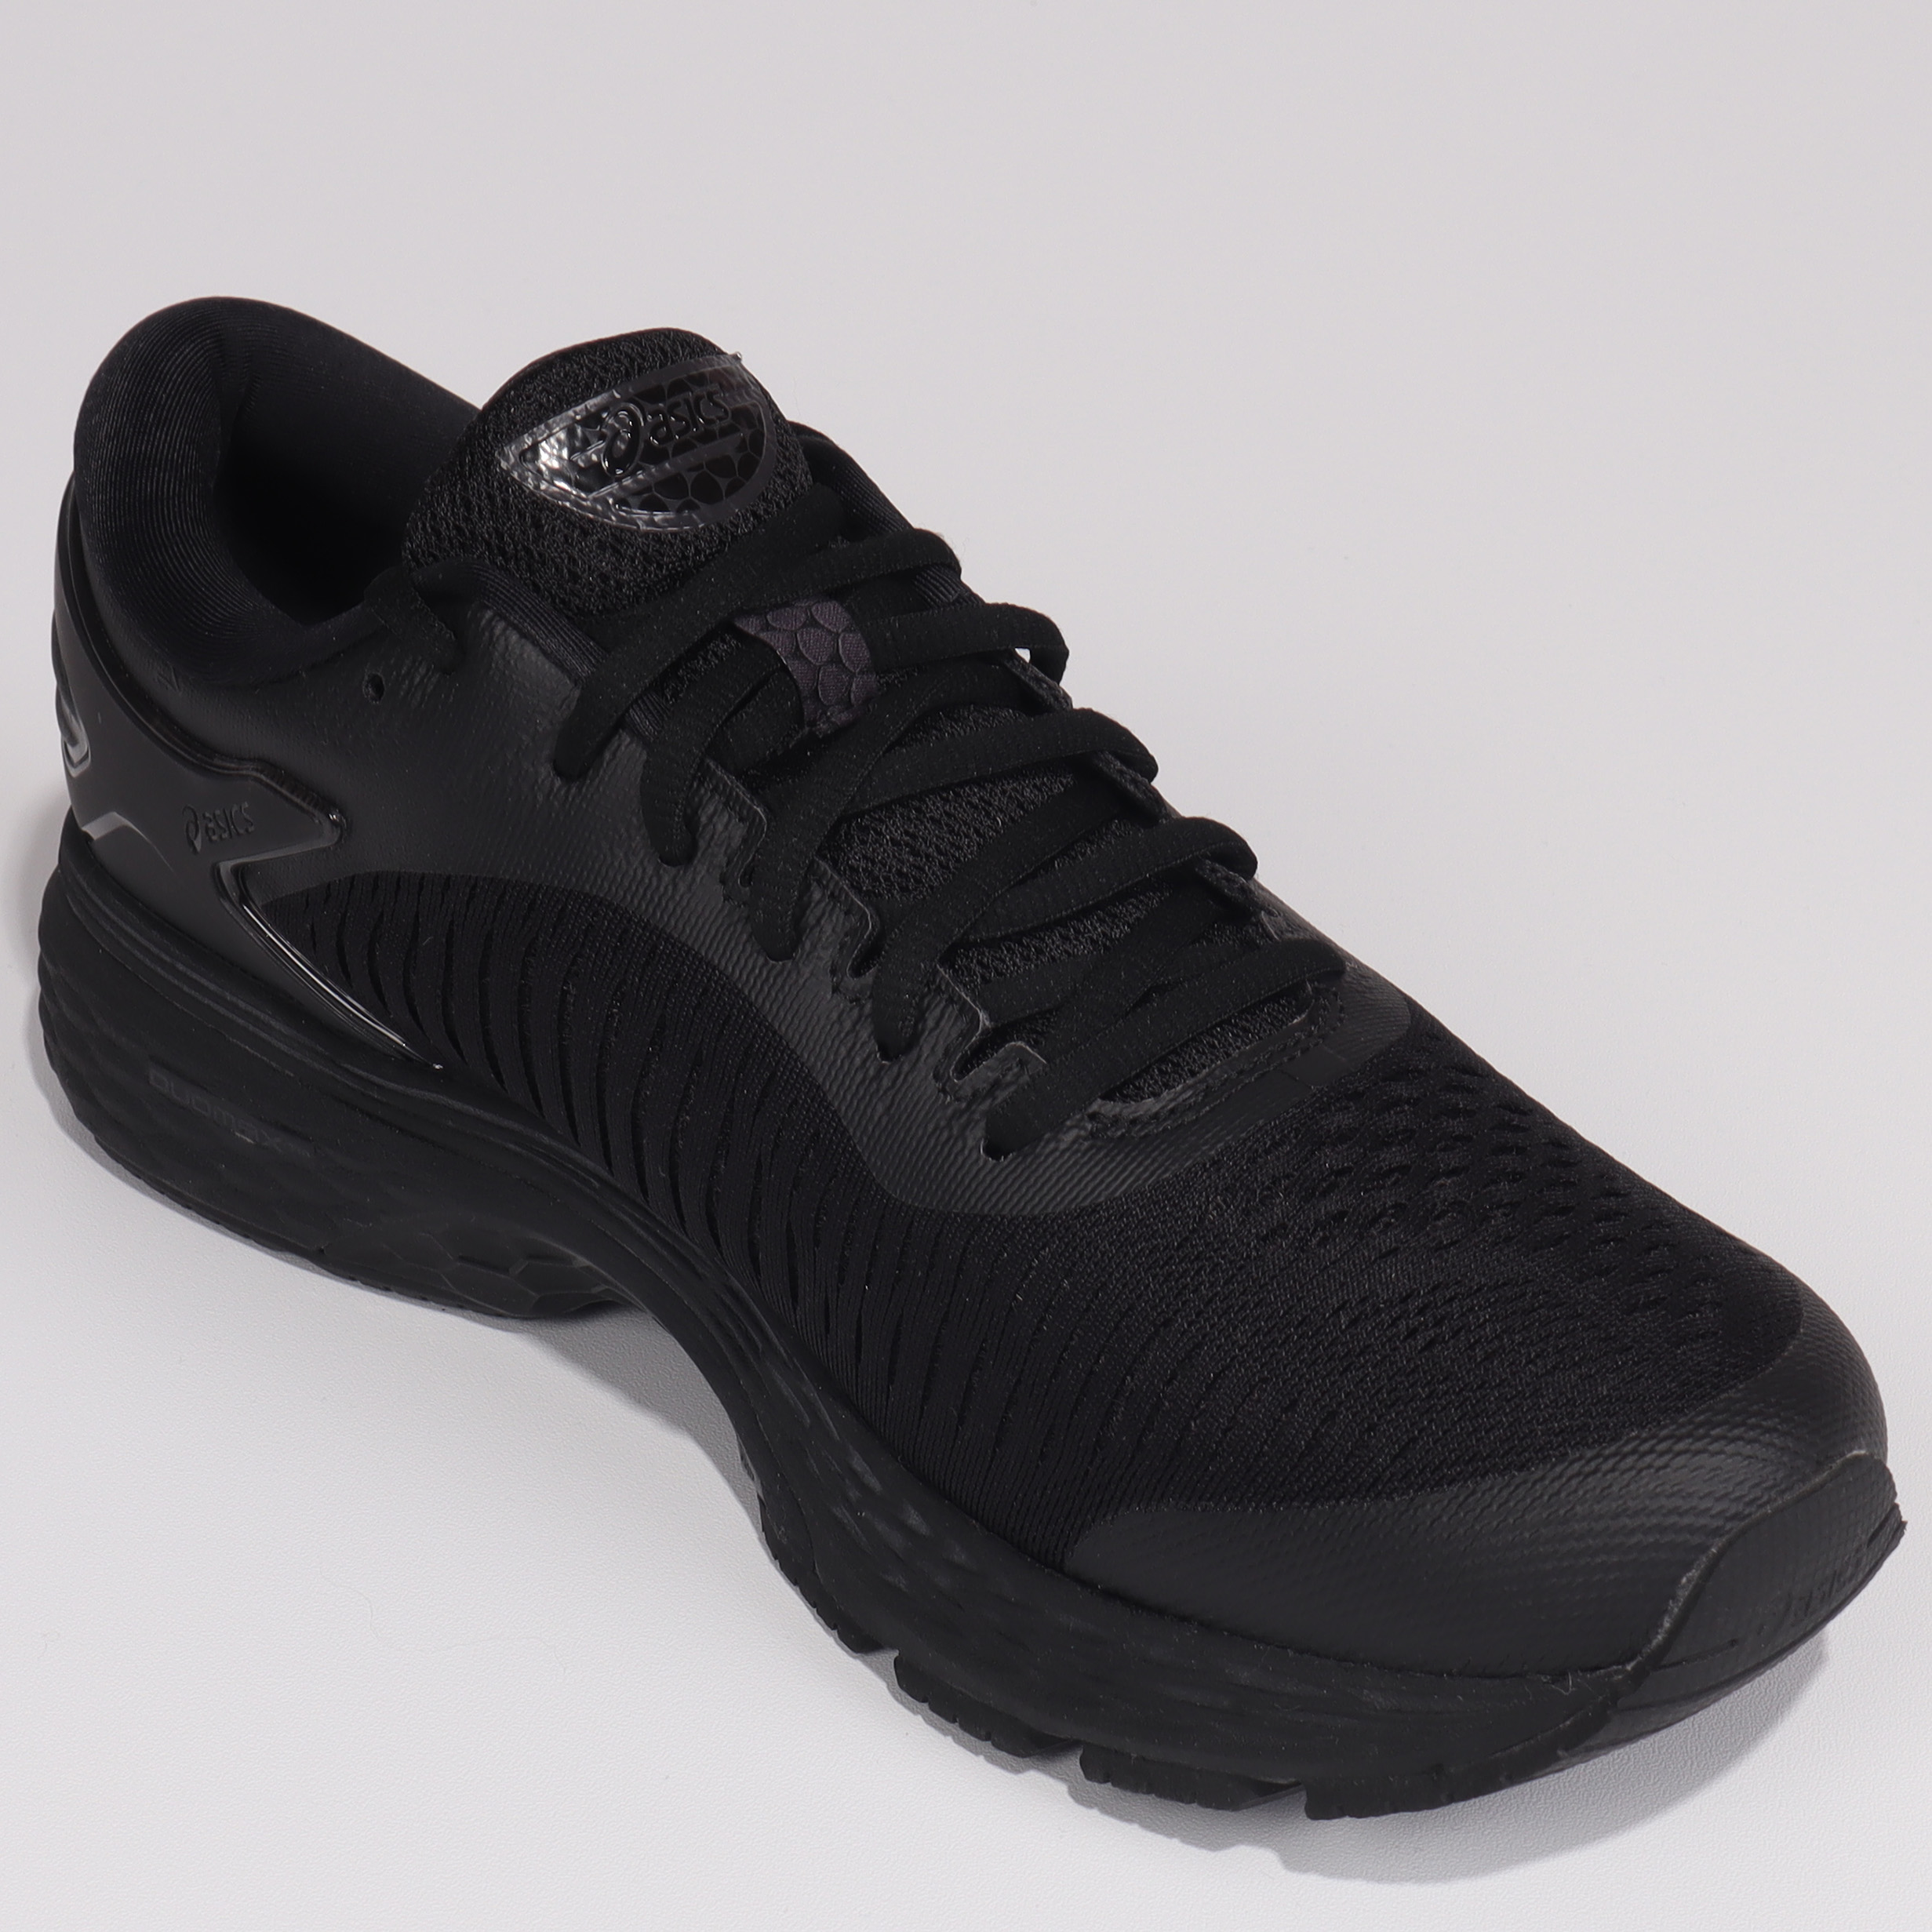 کفش مخصوص دویدن اسیکس مدل GEL-KAYANO 25 کد 1011A019-002